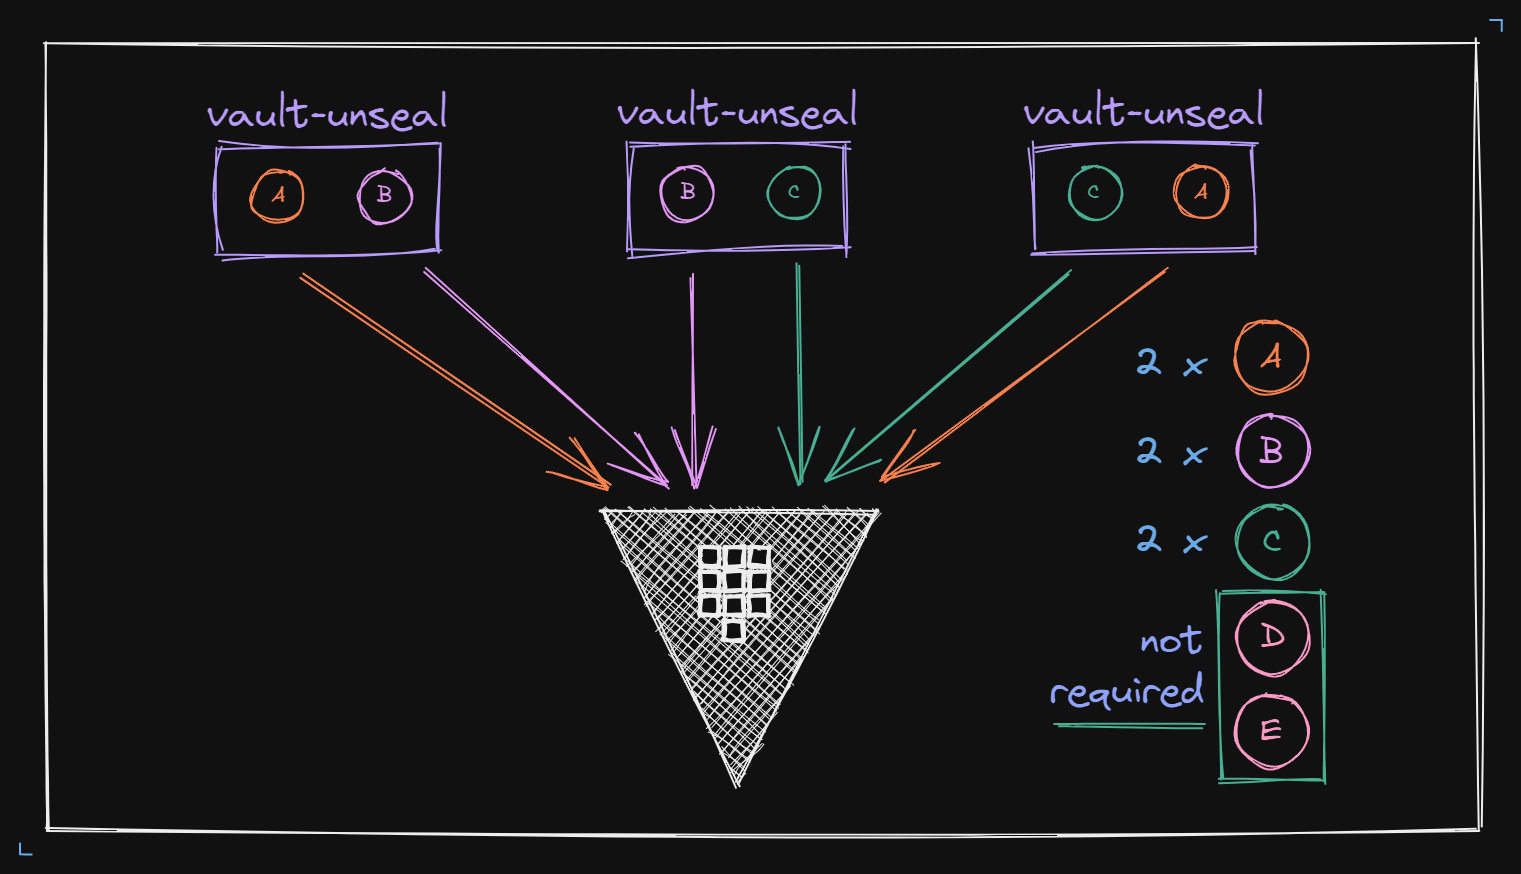 vault-unseal example diagram